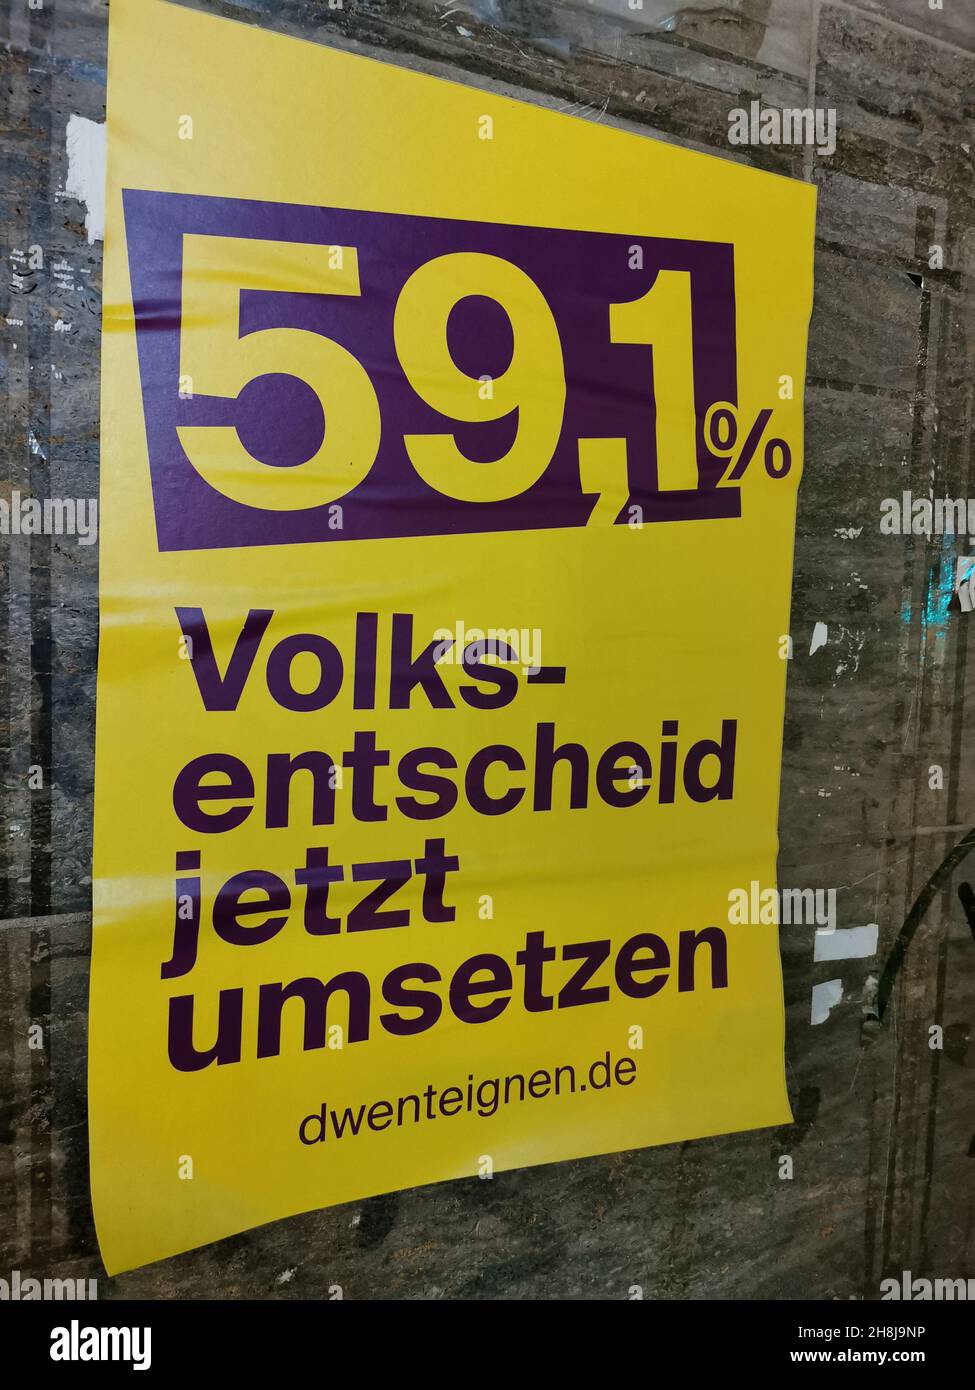 Ein Plakat am Bahnhof Zoo - 59,1 % Volksentscheid jetzt umsetzten.Eine Initiative möchte die Gesellschaft Deutsche Wohnen zu enteignen. Stock Photo